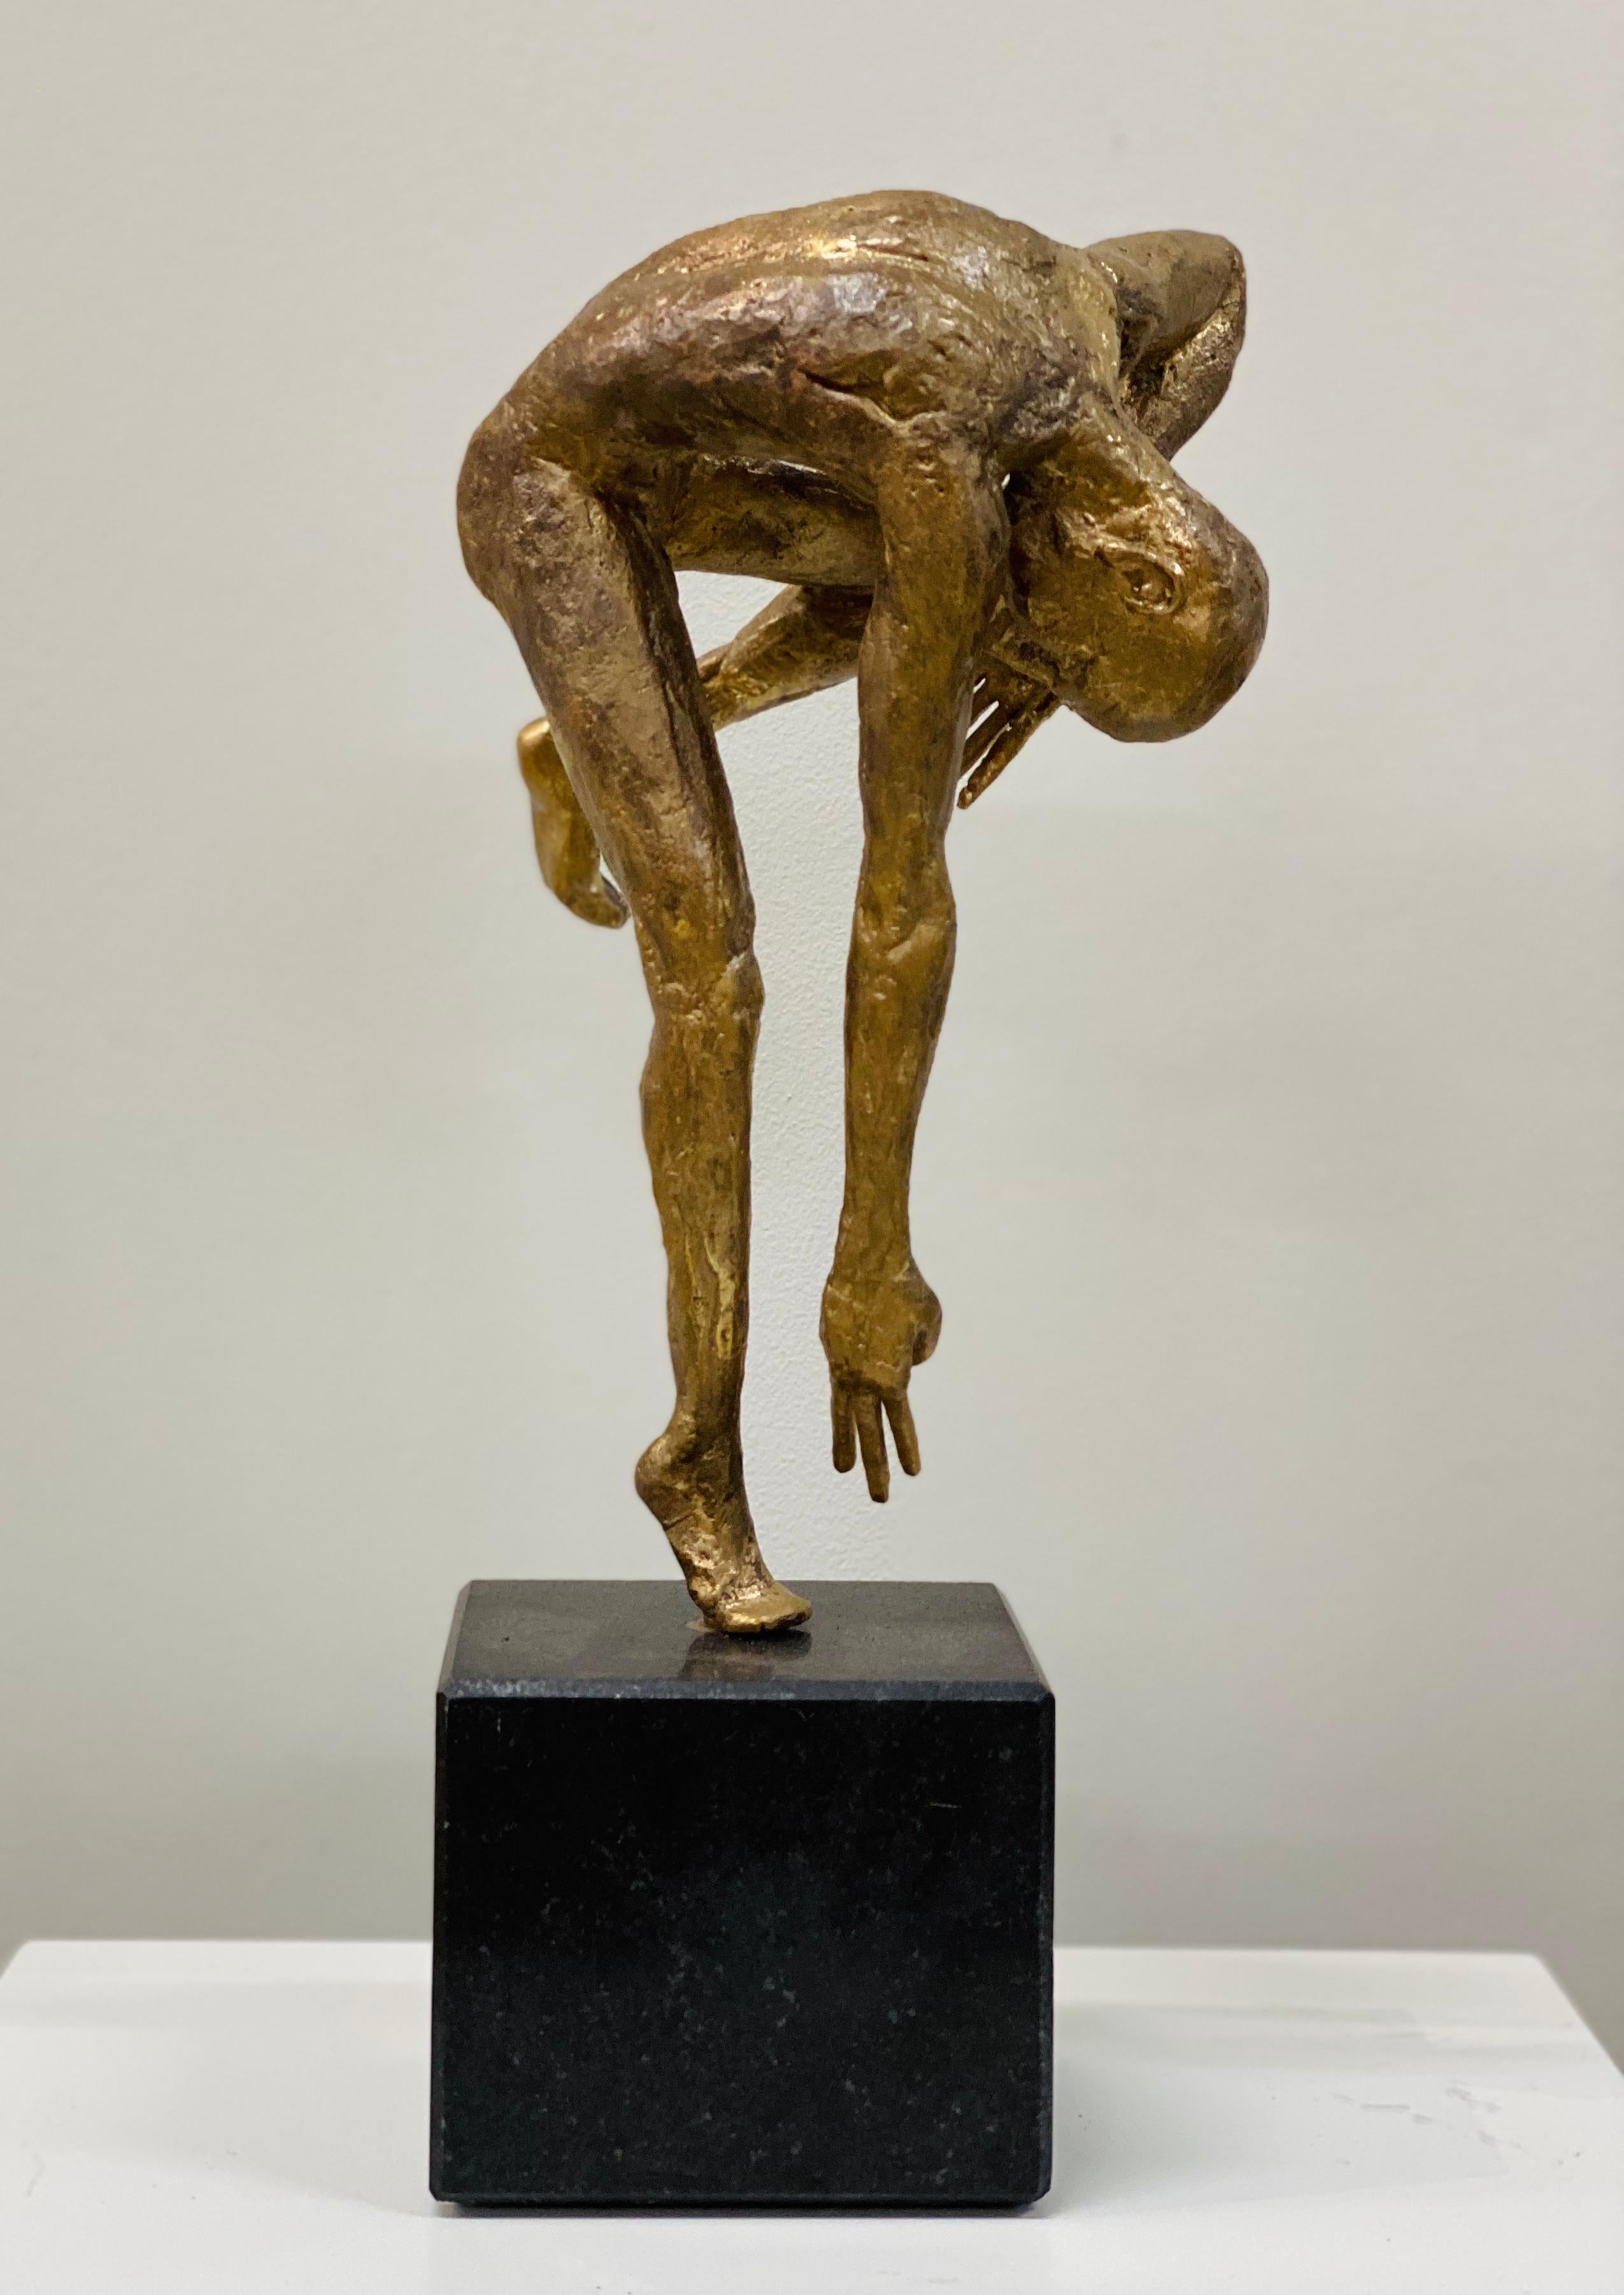 Cette sculpture est réalisée en bronze, par l'artiste néerlandais Martijn Soontiens. 

Ses sculptures masculines dansantes ont pour thème le déplacement et le mouvement. L'artiste Martijn Soontiens crée des atmosphères particulières avec ses